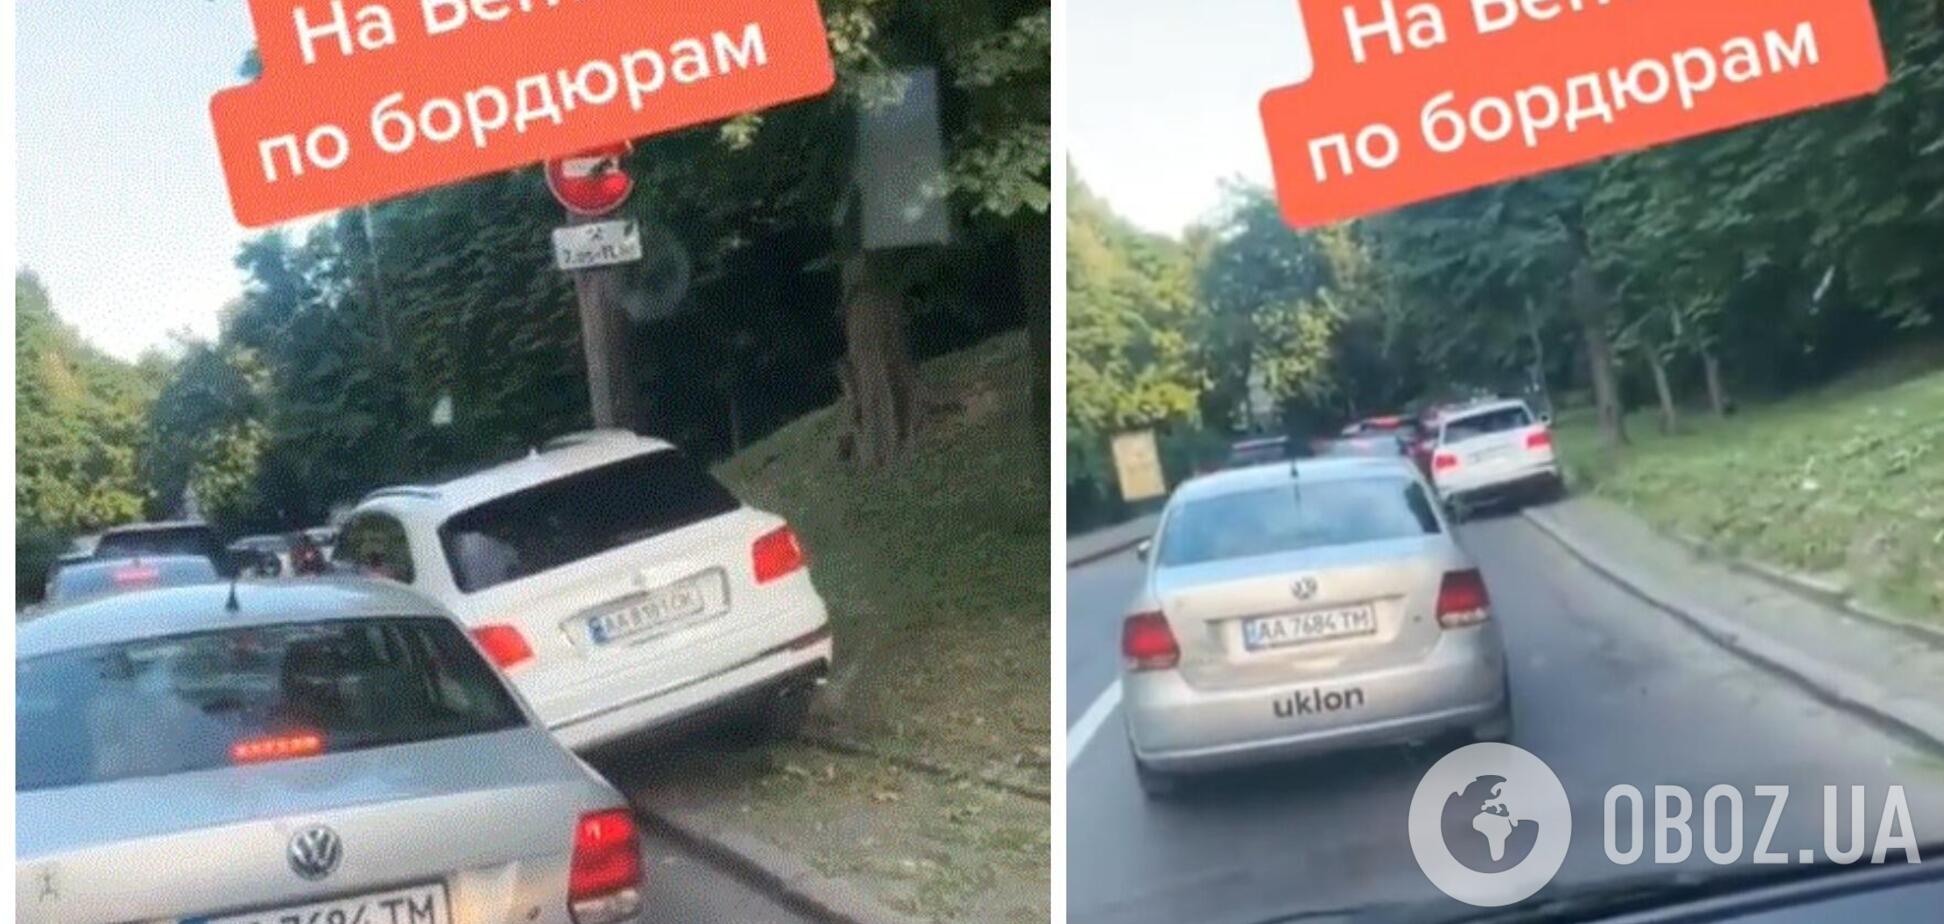 В Киеве засняли сверхнаглого водителя на внедорожнике Bentley